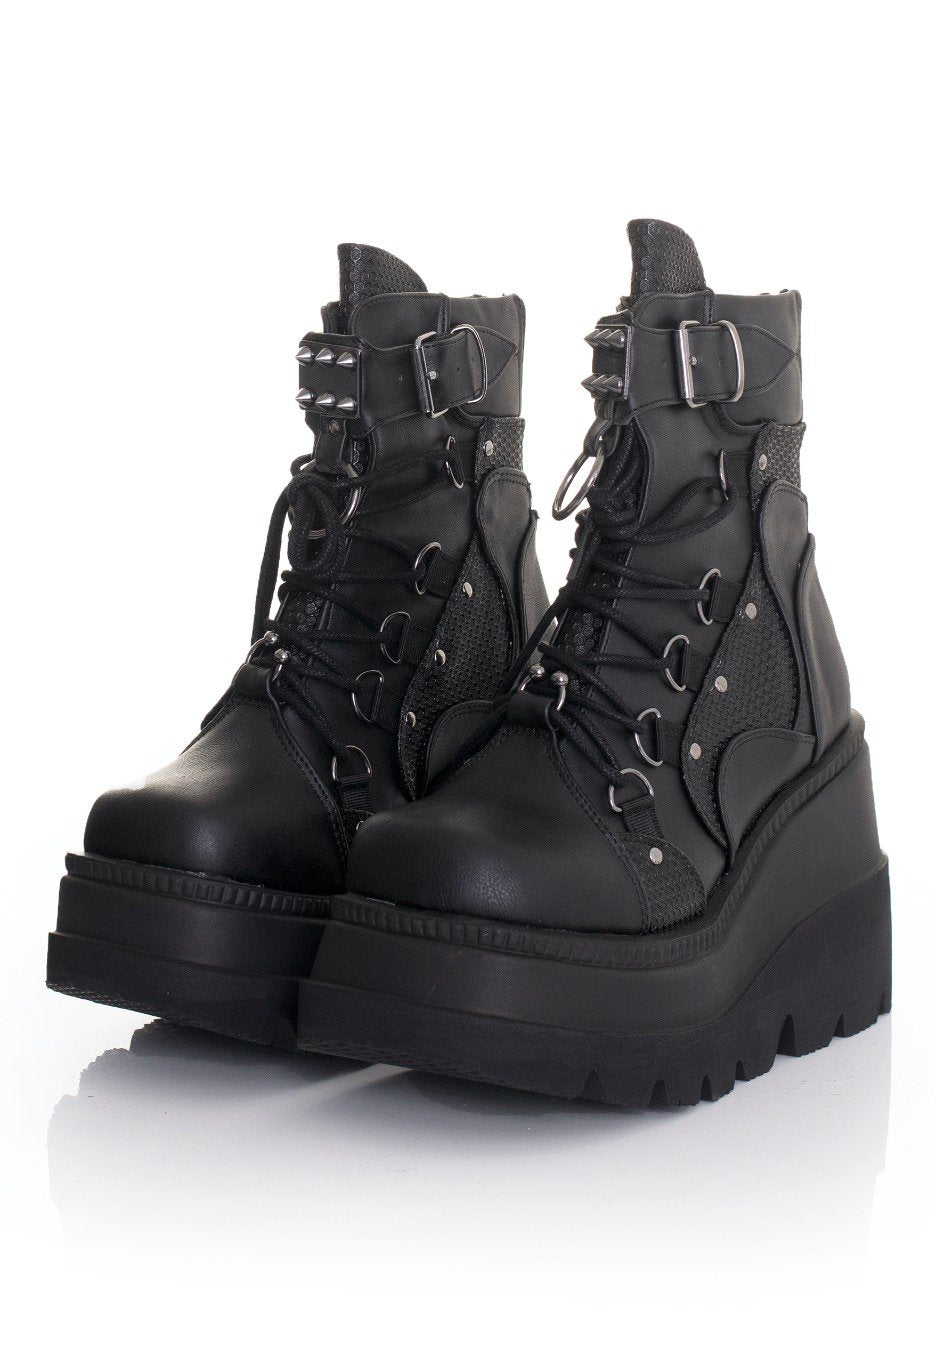 DemoniaCult - Shaker 60 Black Vegan Leather - Girl Shoes